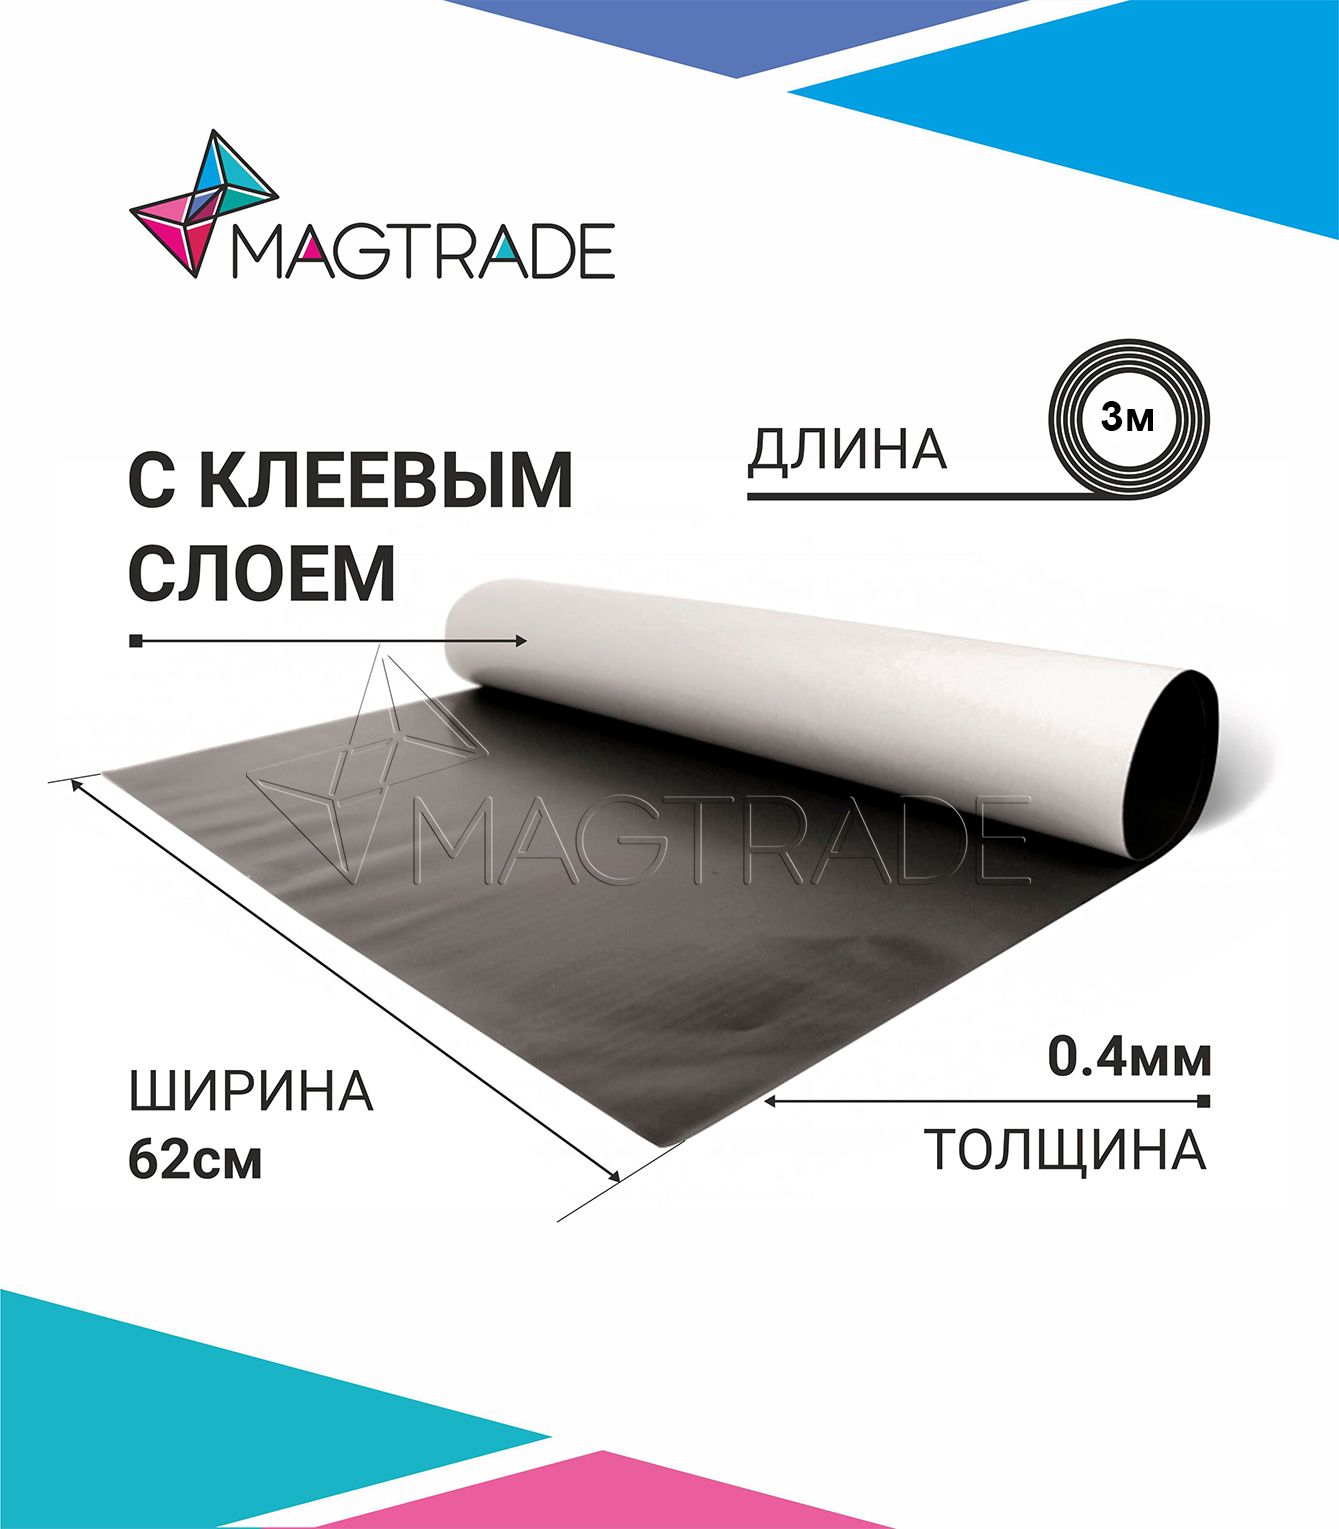 Магнитный винил MAGTRADE с клеевым слоем 0,62 х 3 м, толщина 0,4 мм, лист 3 метра магнитный винил magtrade с клеем толщина 0 9 мм лист 2м